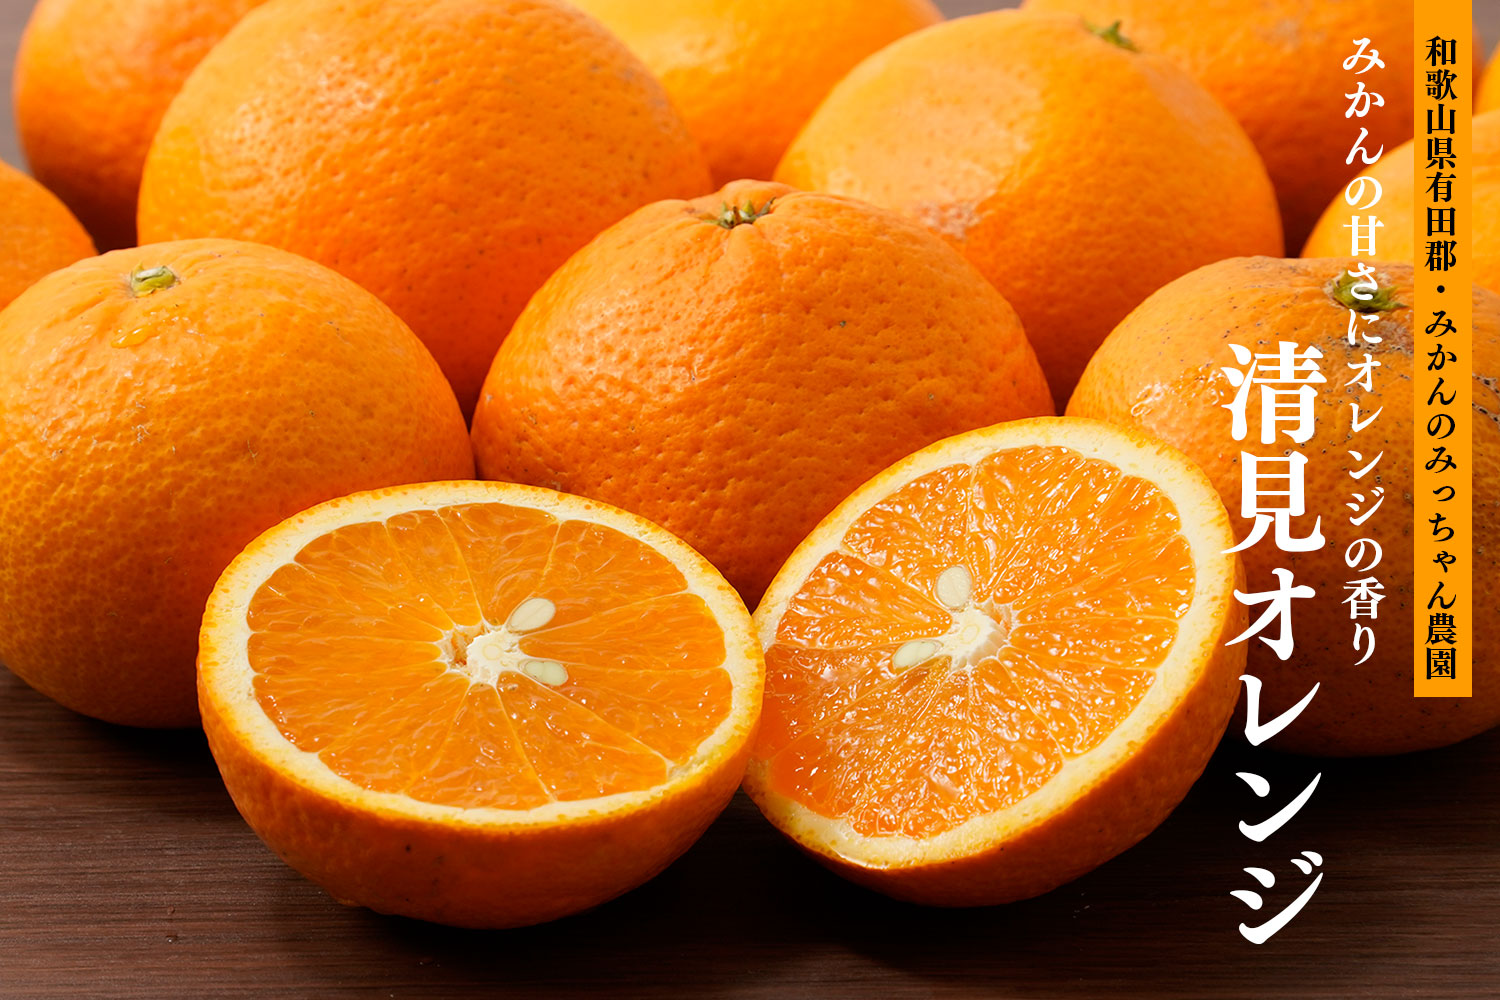 みかんのみっちゃん農園「みかんの甘さにオレンジの香り 清見オレンジ」